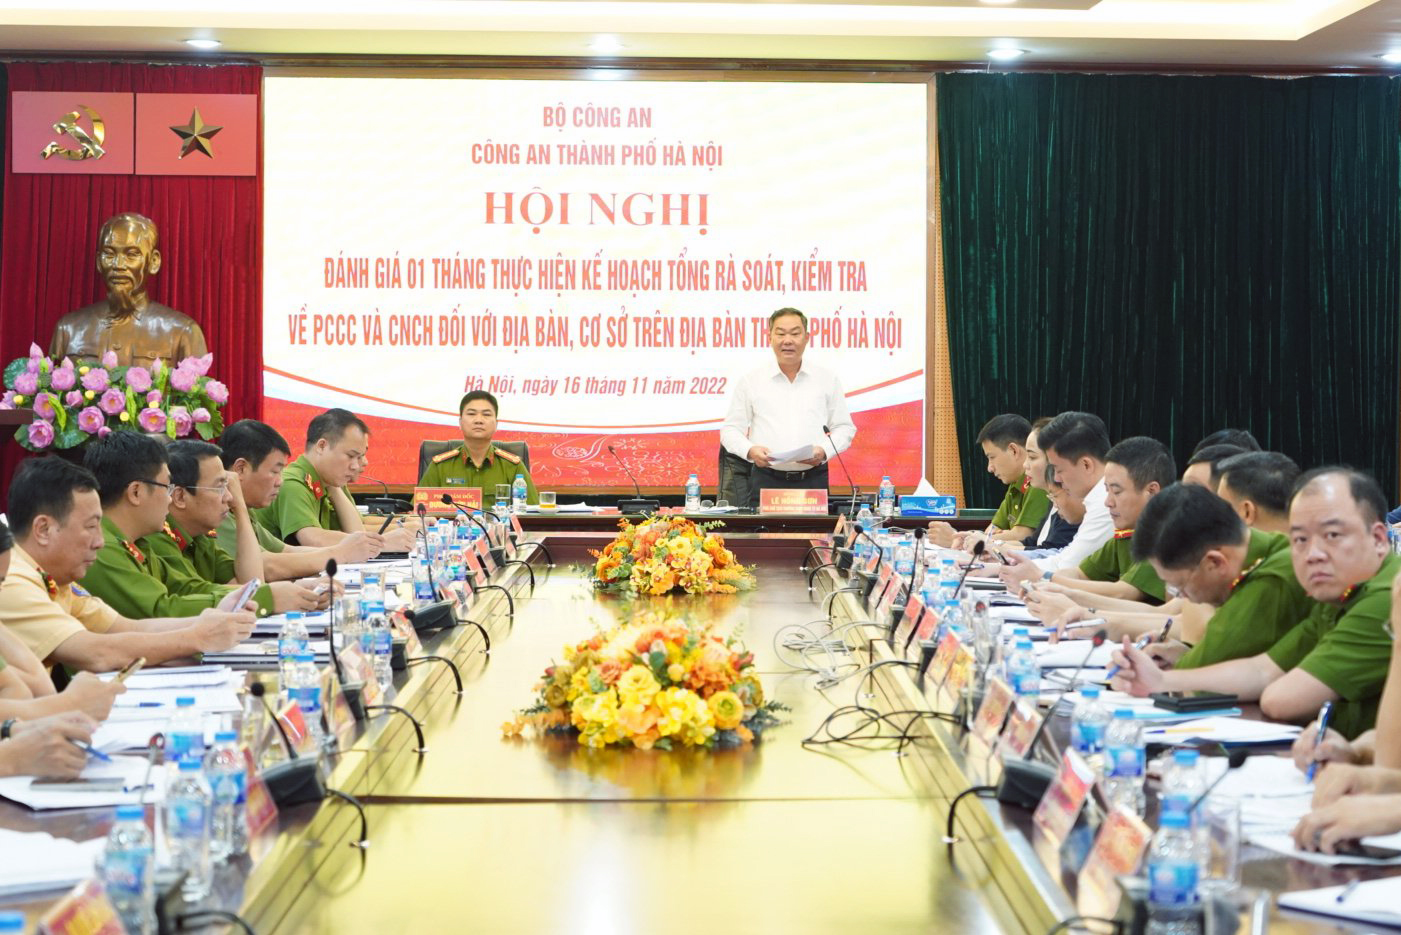 Ông Lê Hồng Sơn, Phó Chủ tịch thường trực UBND thành phố Hà Nội, phát biểu chỉ đạo tại hội nghị